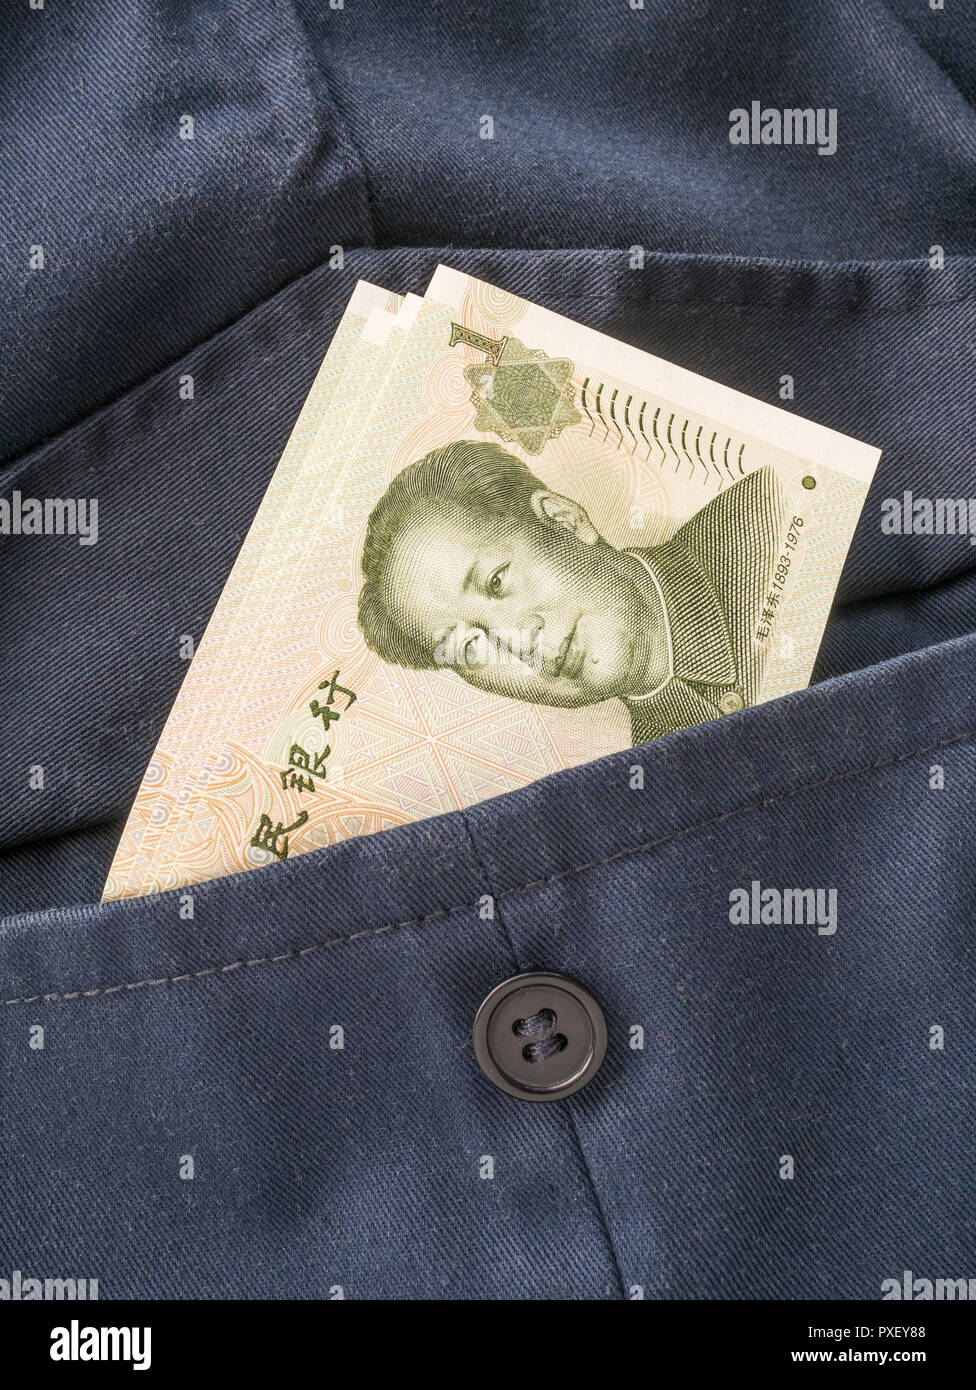 Chinesische Yuan Renminbi/Banknoten mit Tasche - Metapher für persönlichen Gewinn, Chinesische Löhne, Lohnniveau, China Bekleidungsindustrie. Stockfoto